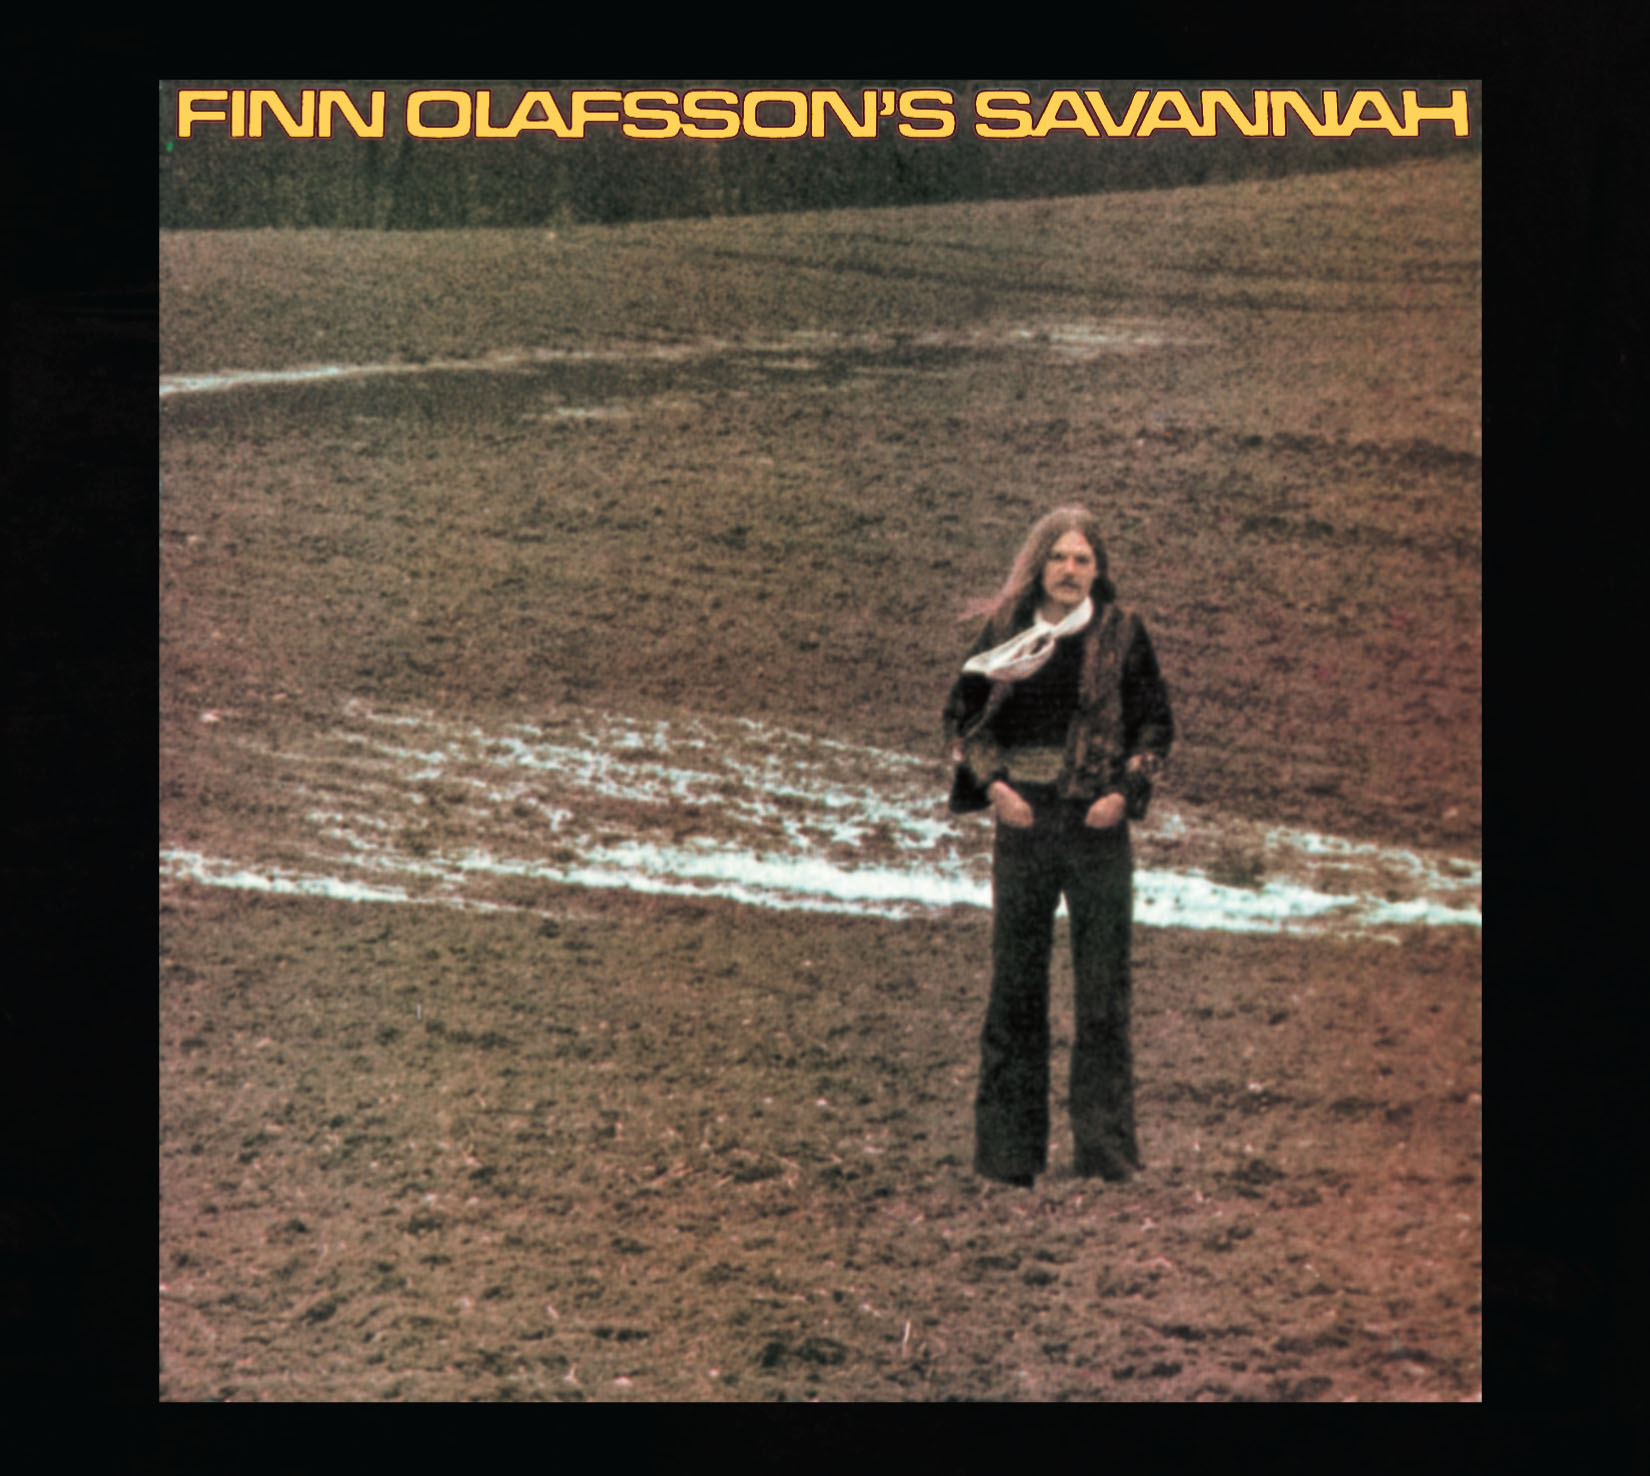 Finn Olafsson's Savannah CD cover